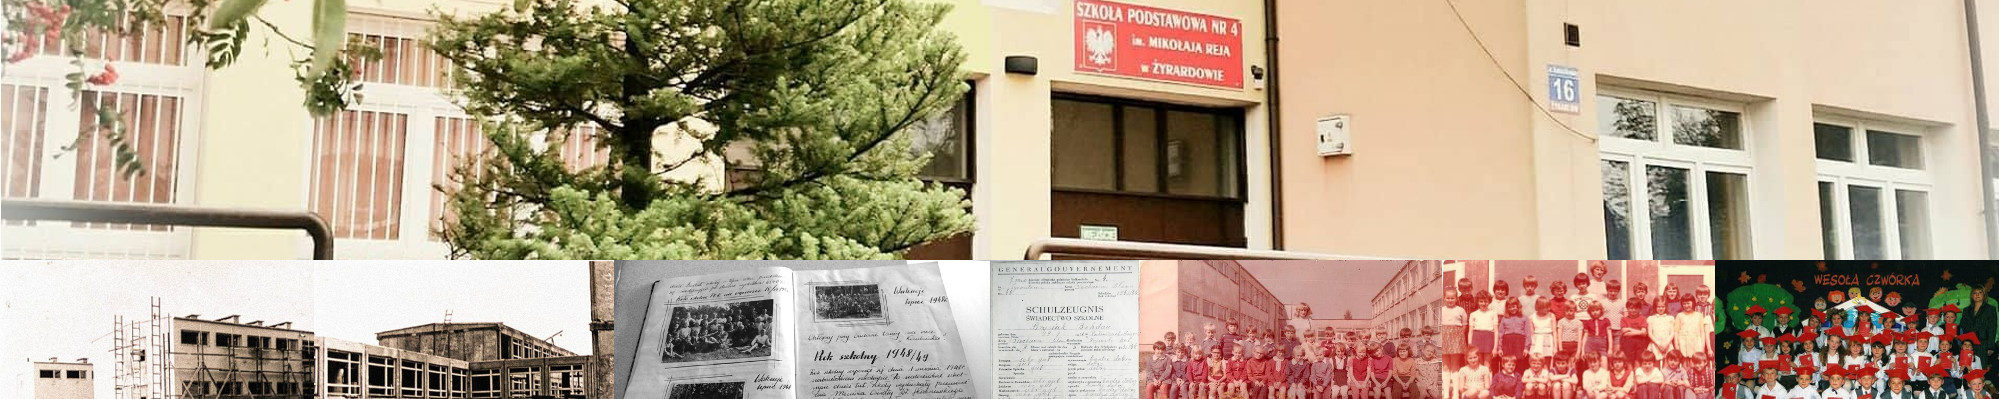 Szkoła Podstawowa nr 4 im. Mikołaja Reja w Żyrardowie